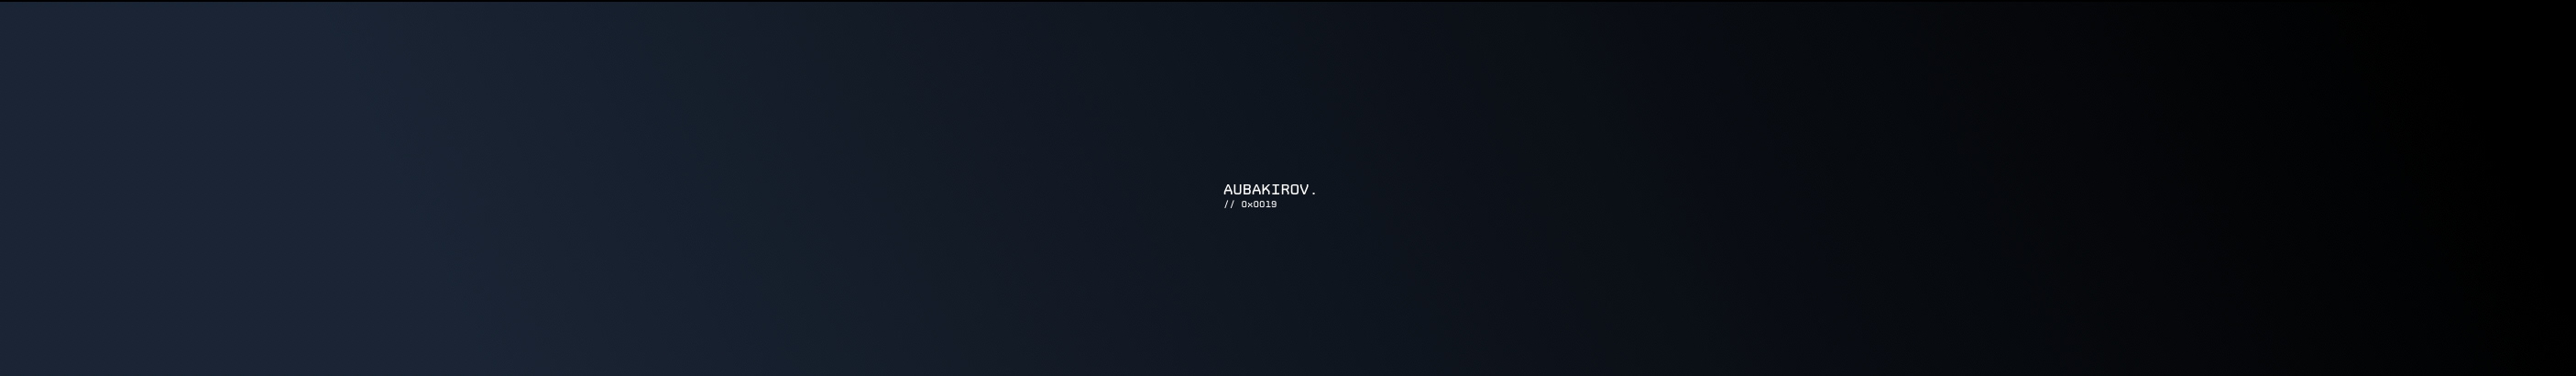 Alexander Aubakirov's profile banner